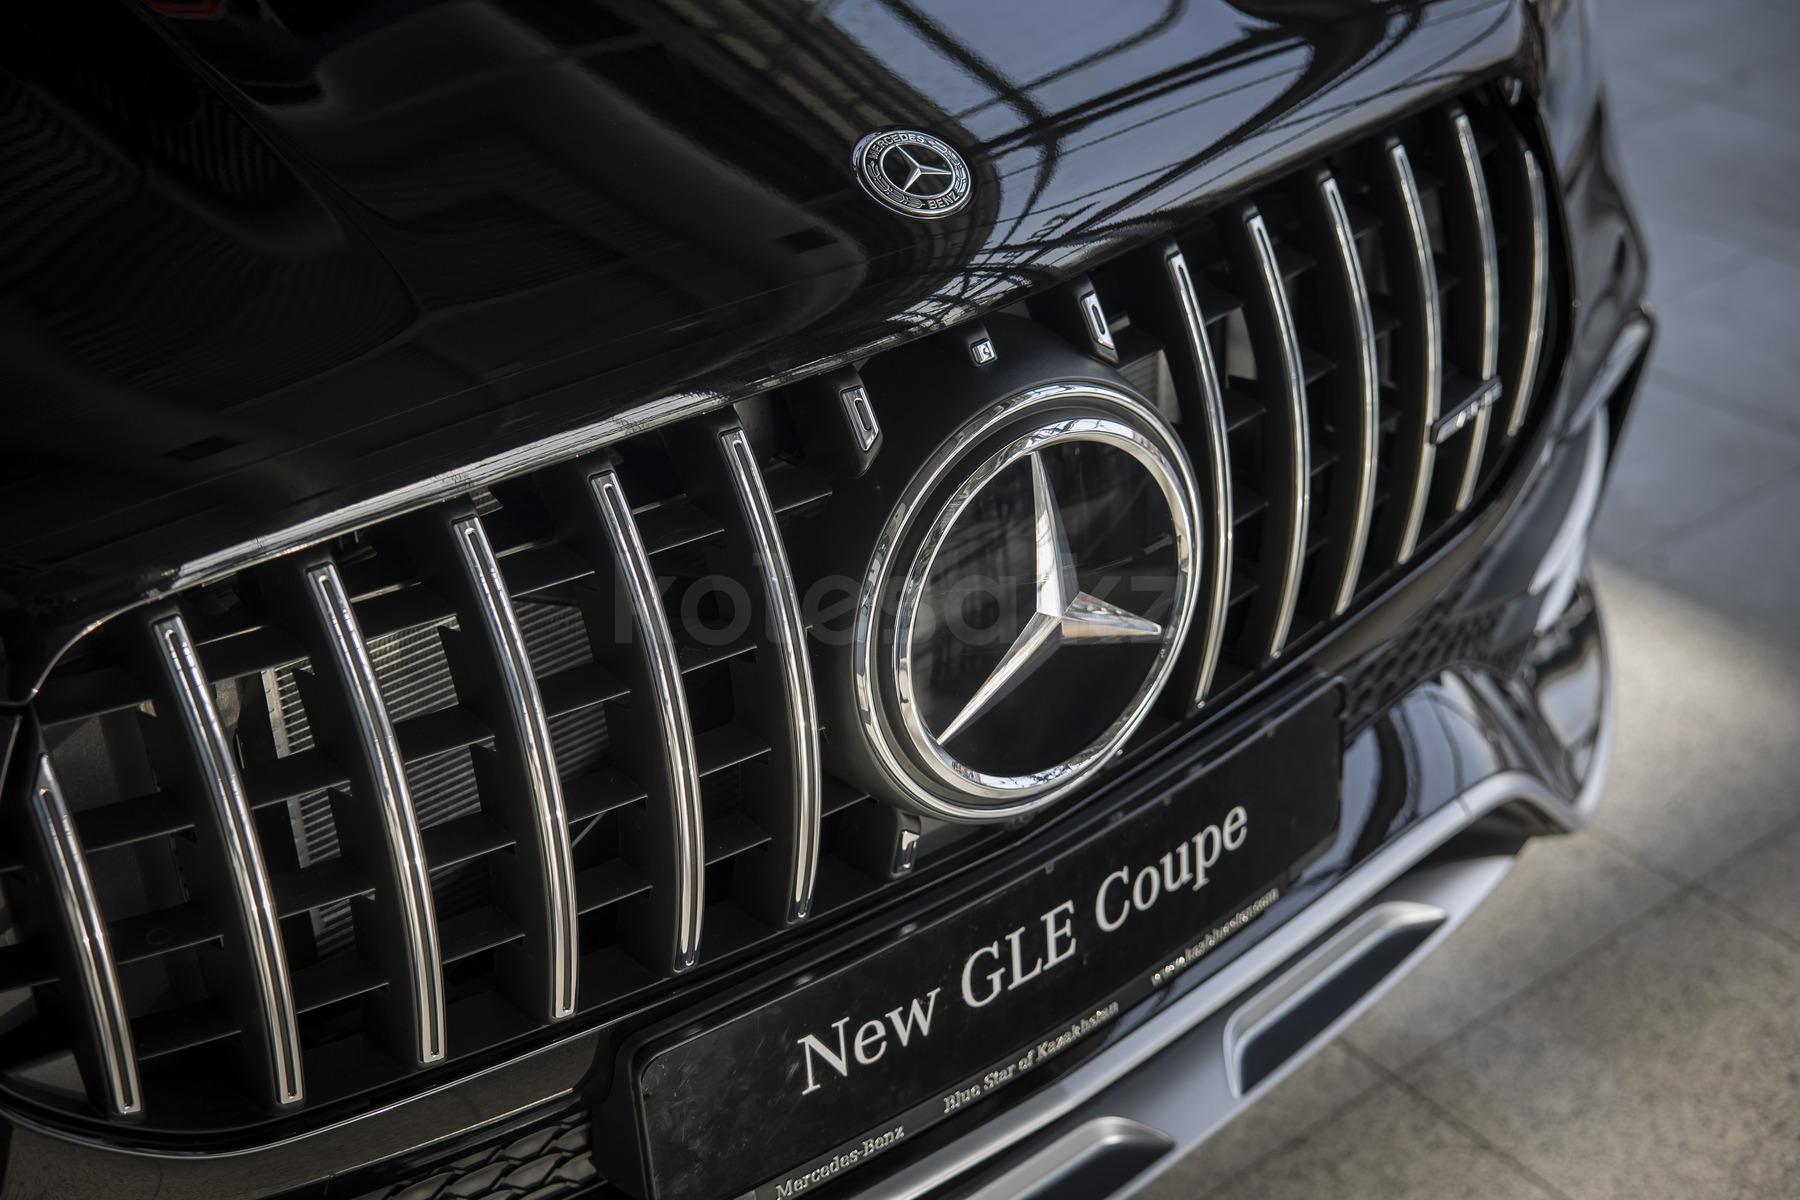 Mercedes-Benz GLE Coupe SUV 2019 - н.в. года от 59 000 000 тенге